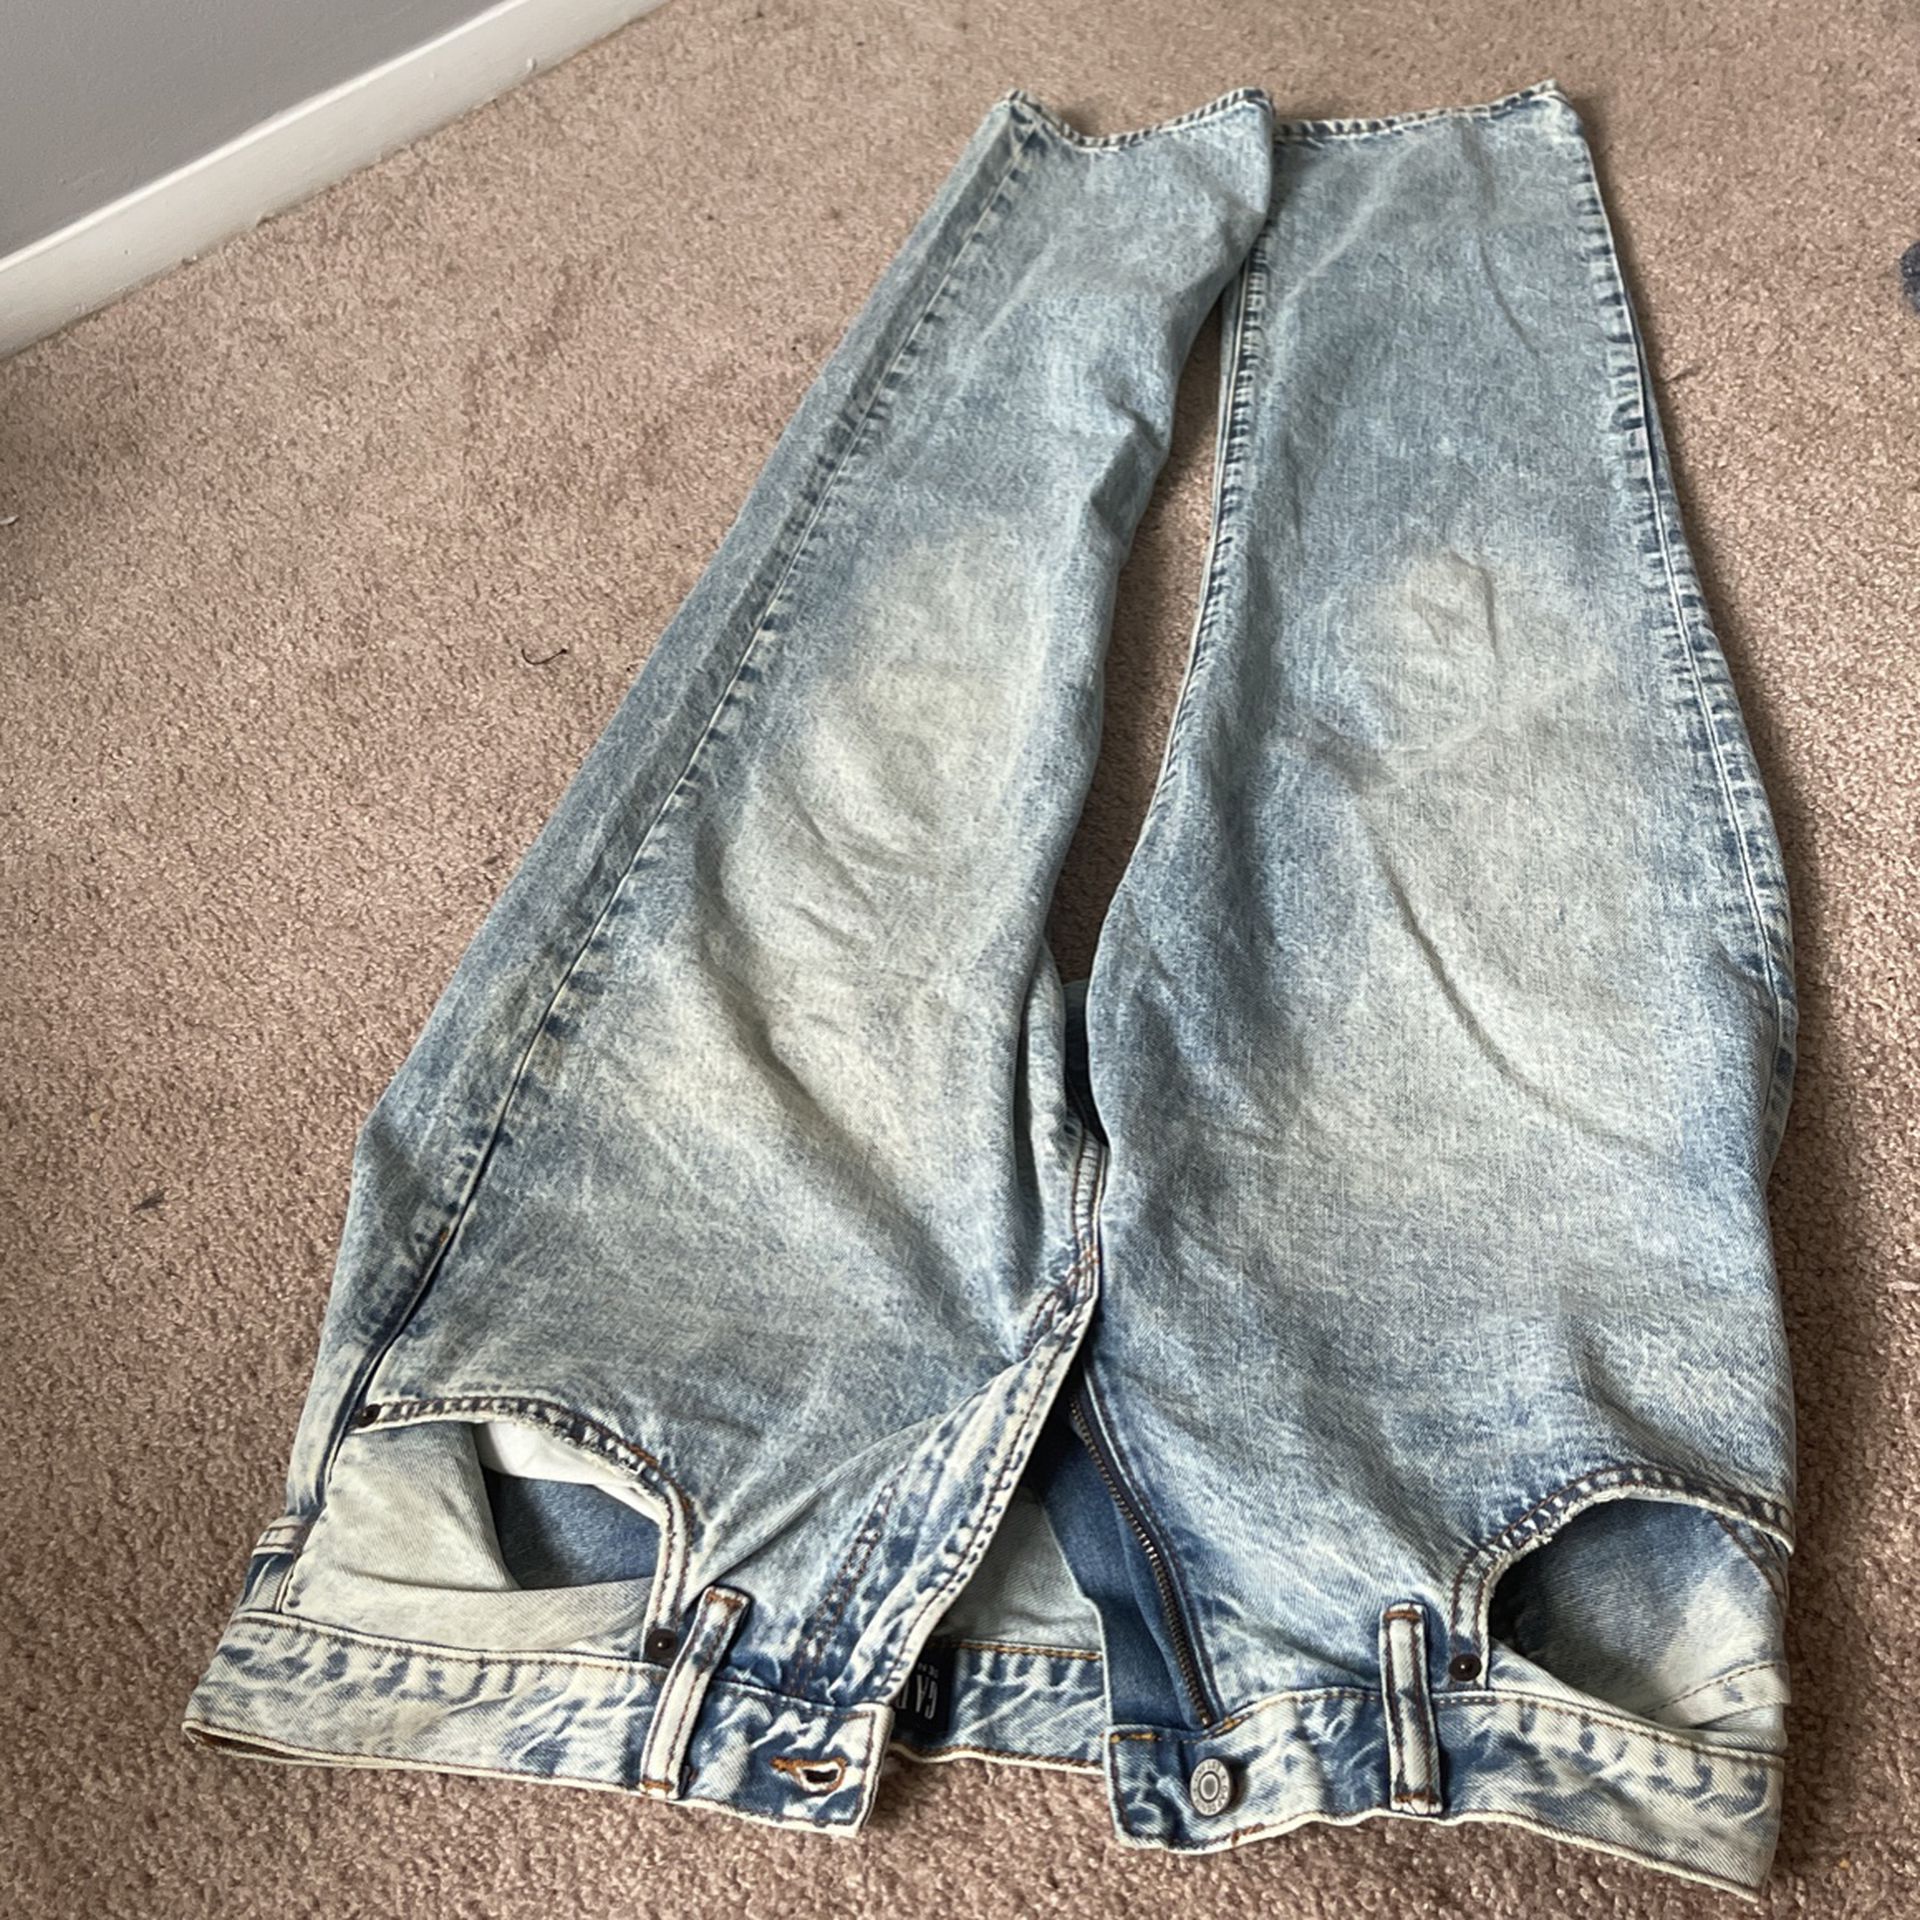 Denim Gap Jeans